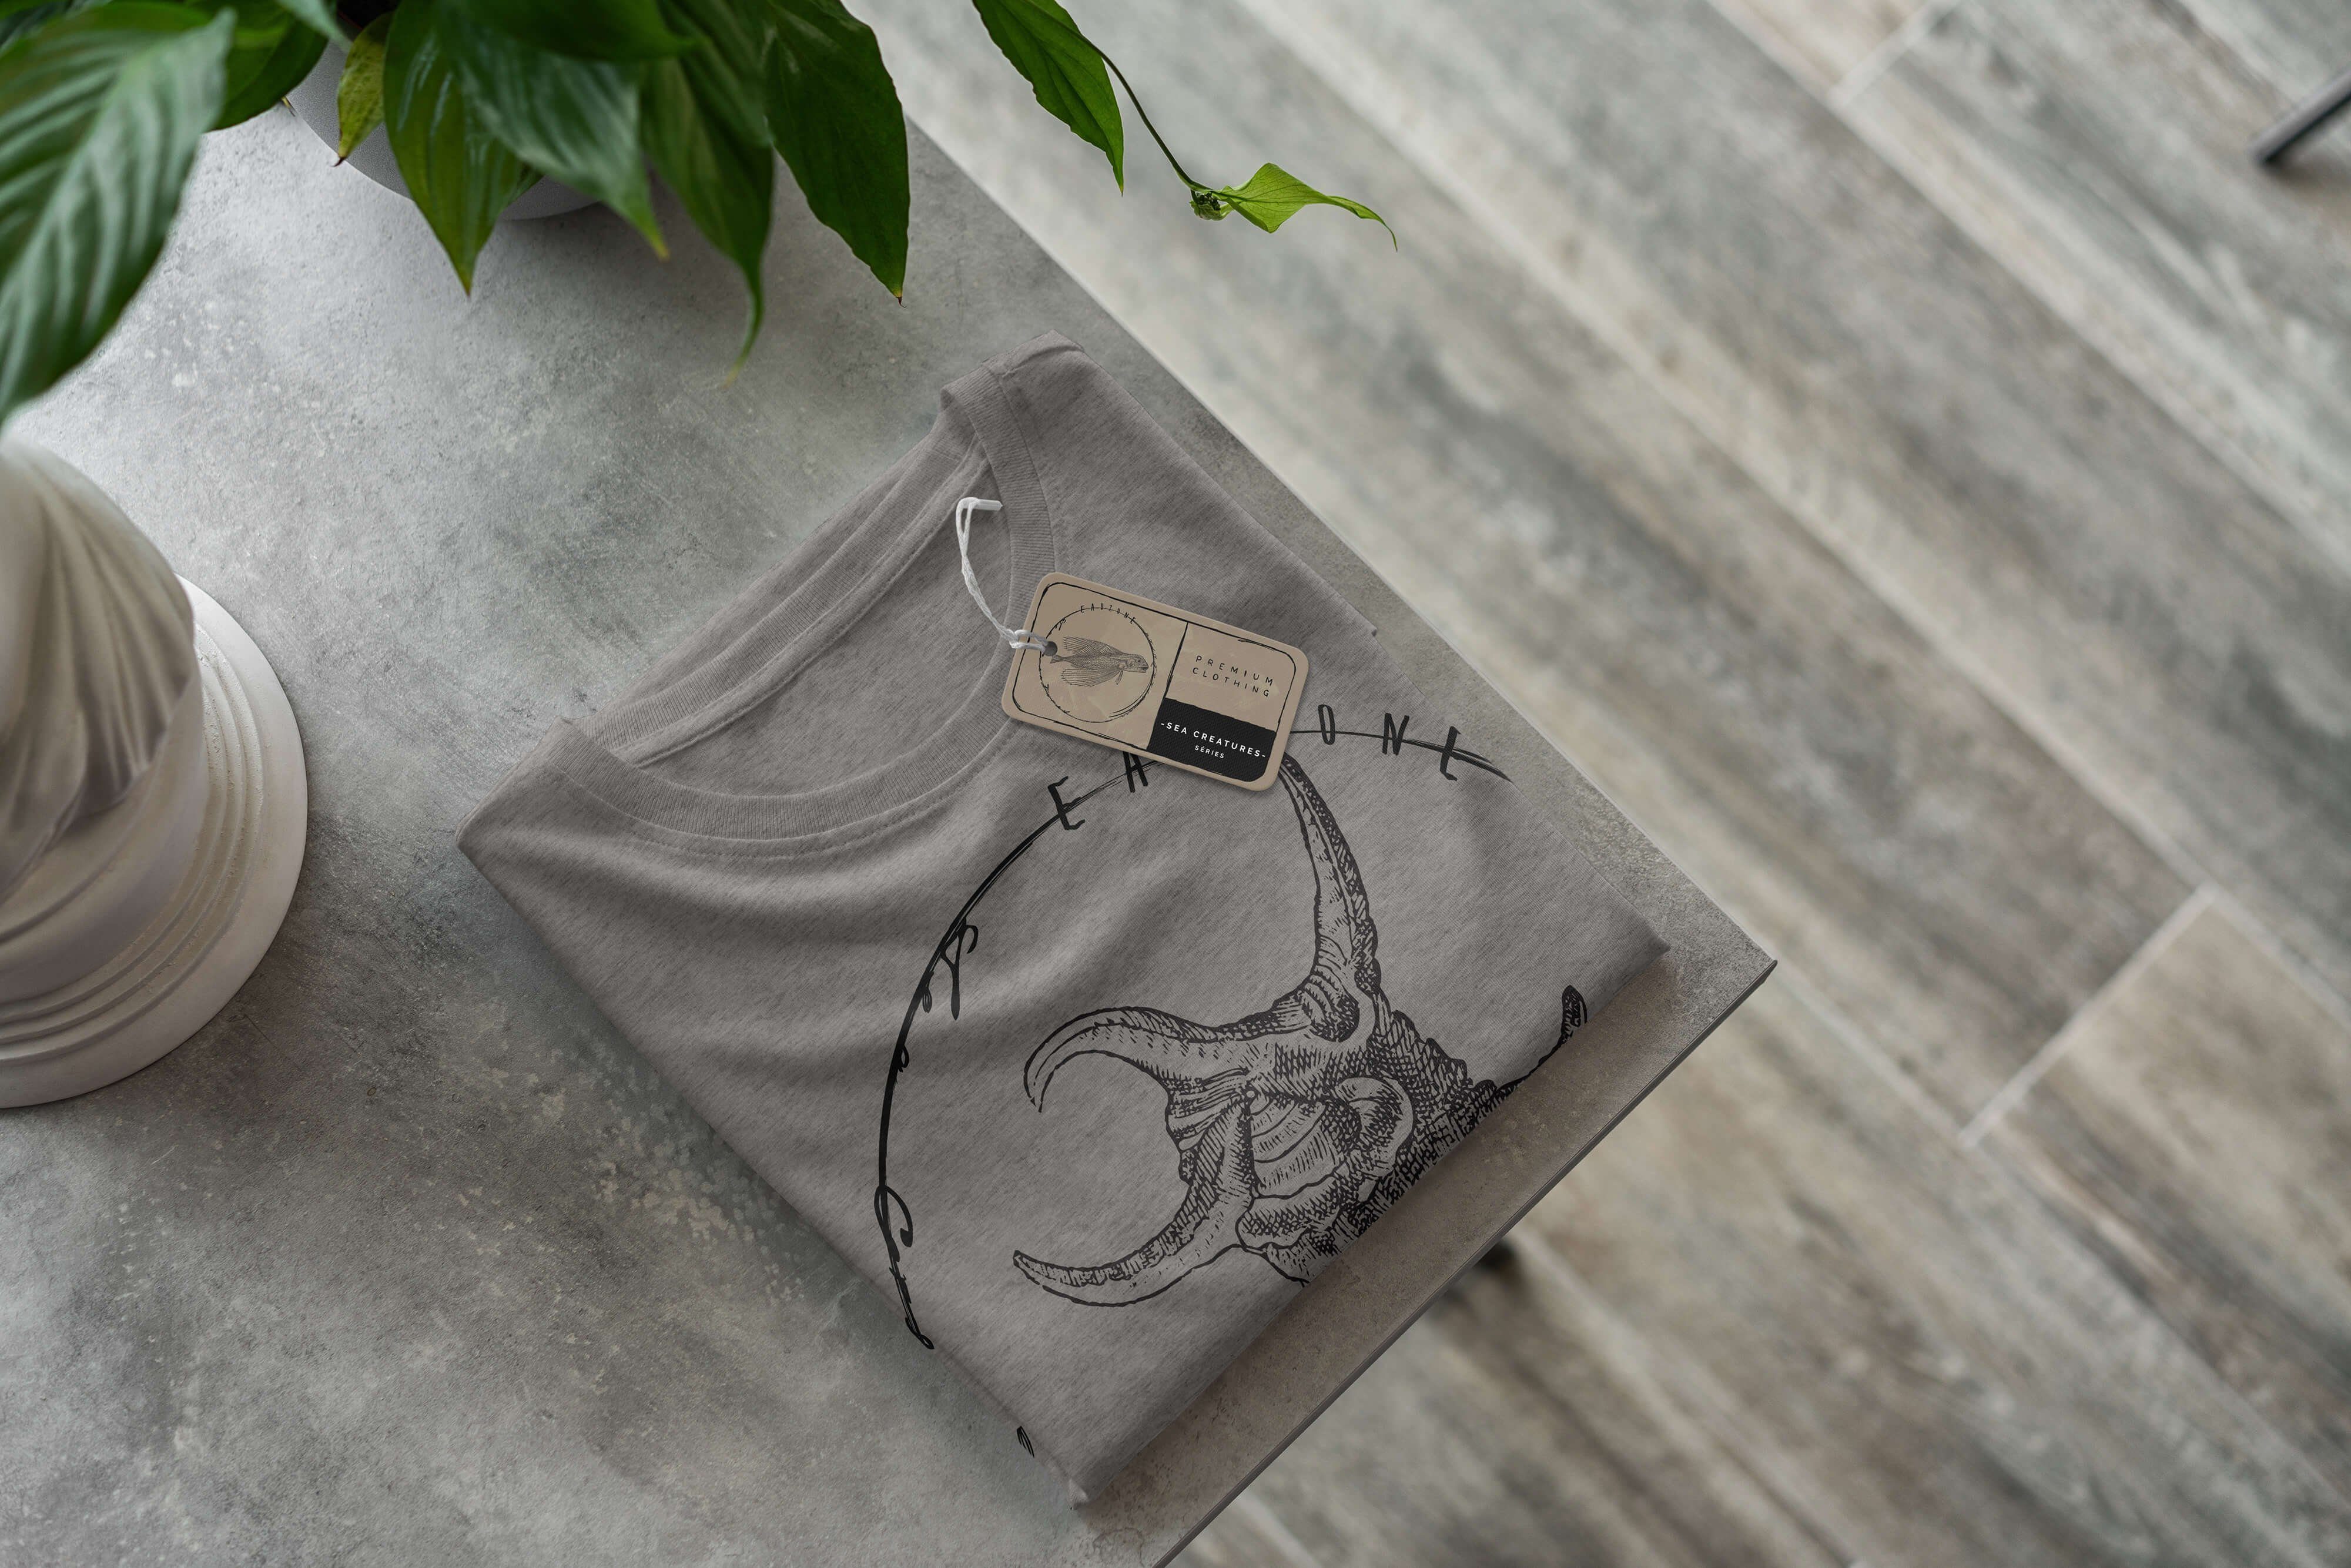 Sea - feine 043 T-Shirt Ash Creatures, Struktur und Schnitt Art T-Shirt Sinus sportlicher Serie: Sea Fische / Tiefsee